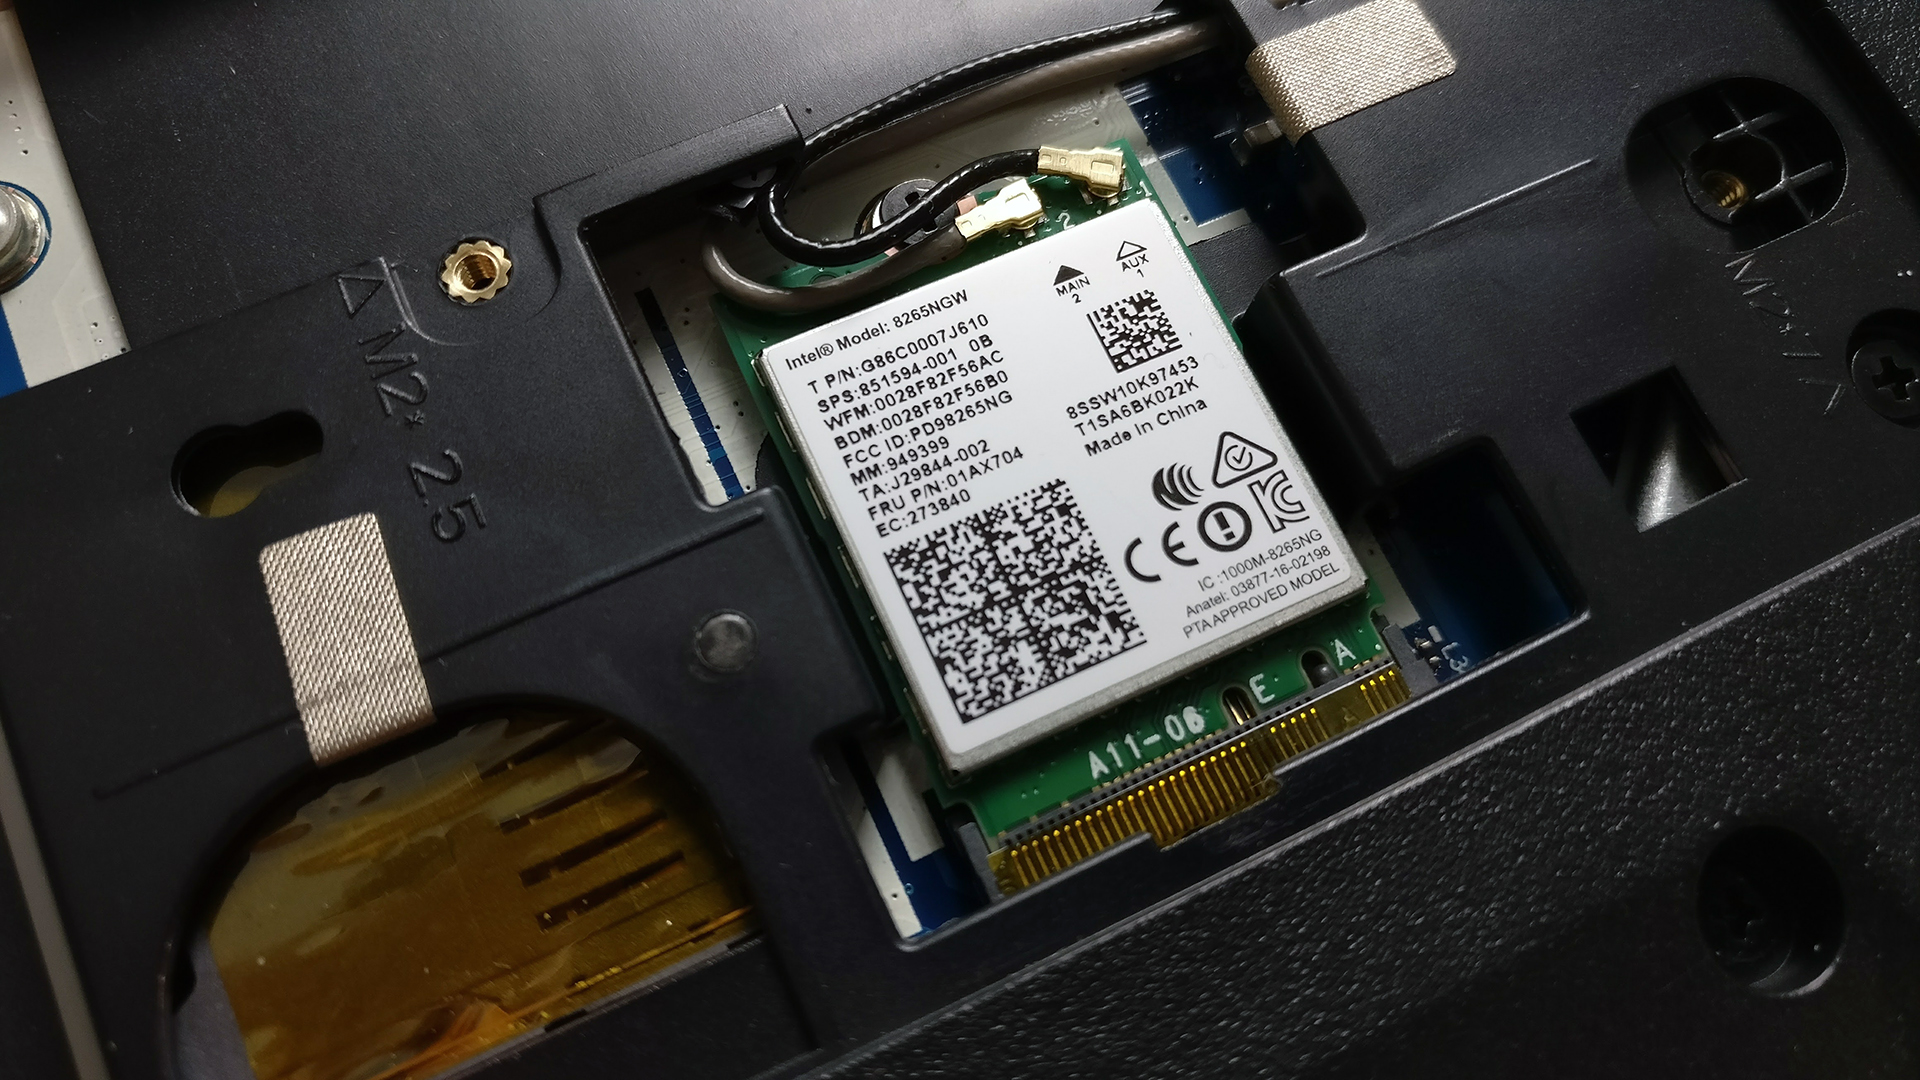 Inside Lenovo ThinkPad E570 - disassembly, internal photos and 